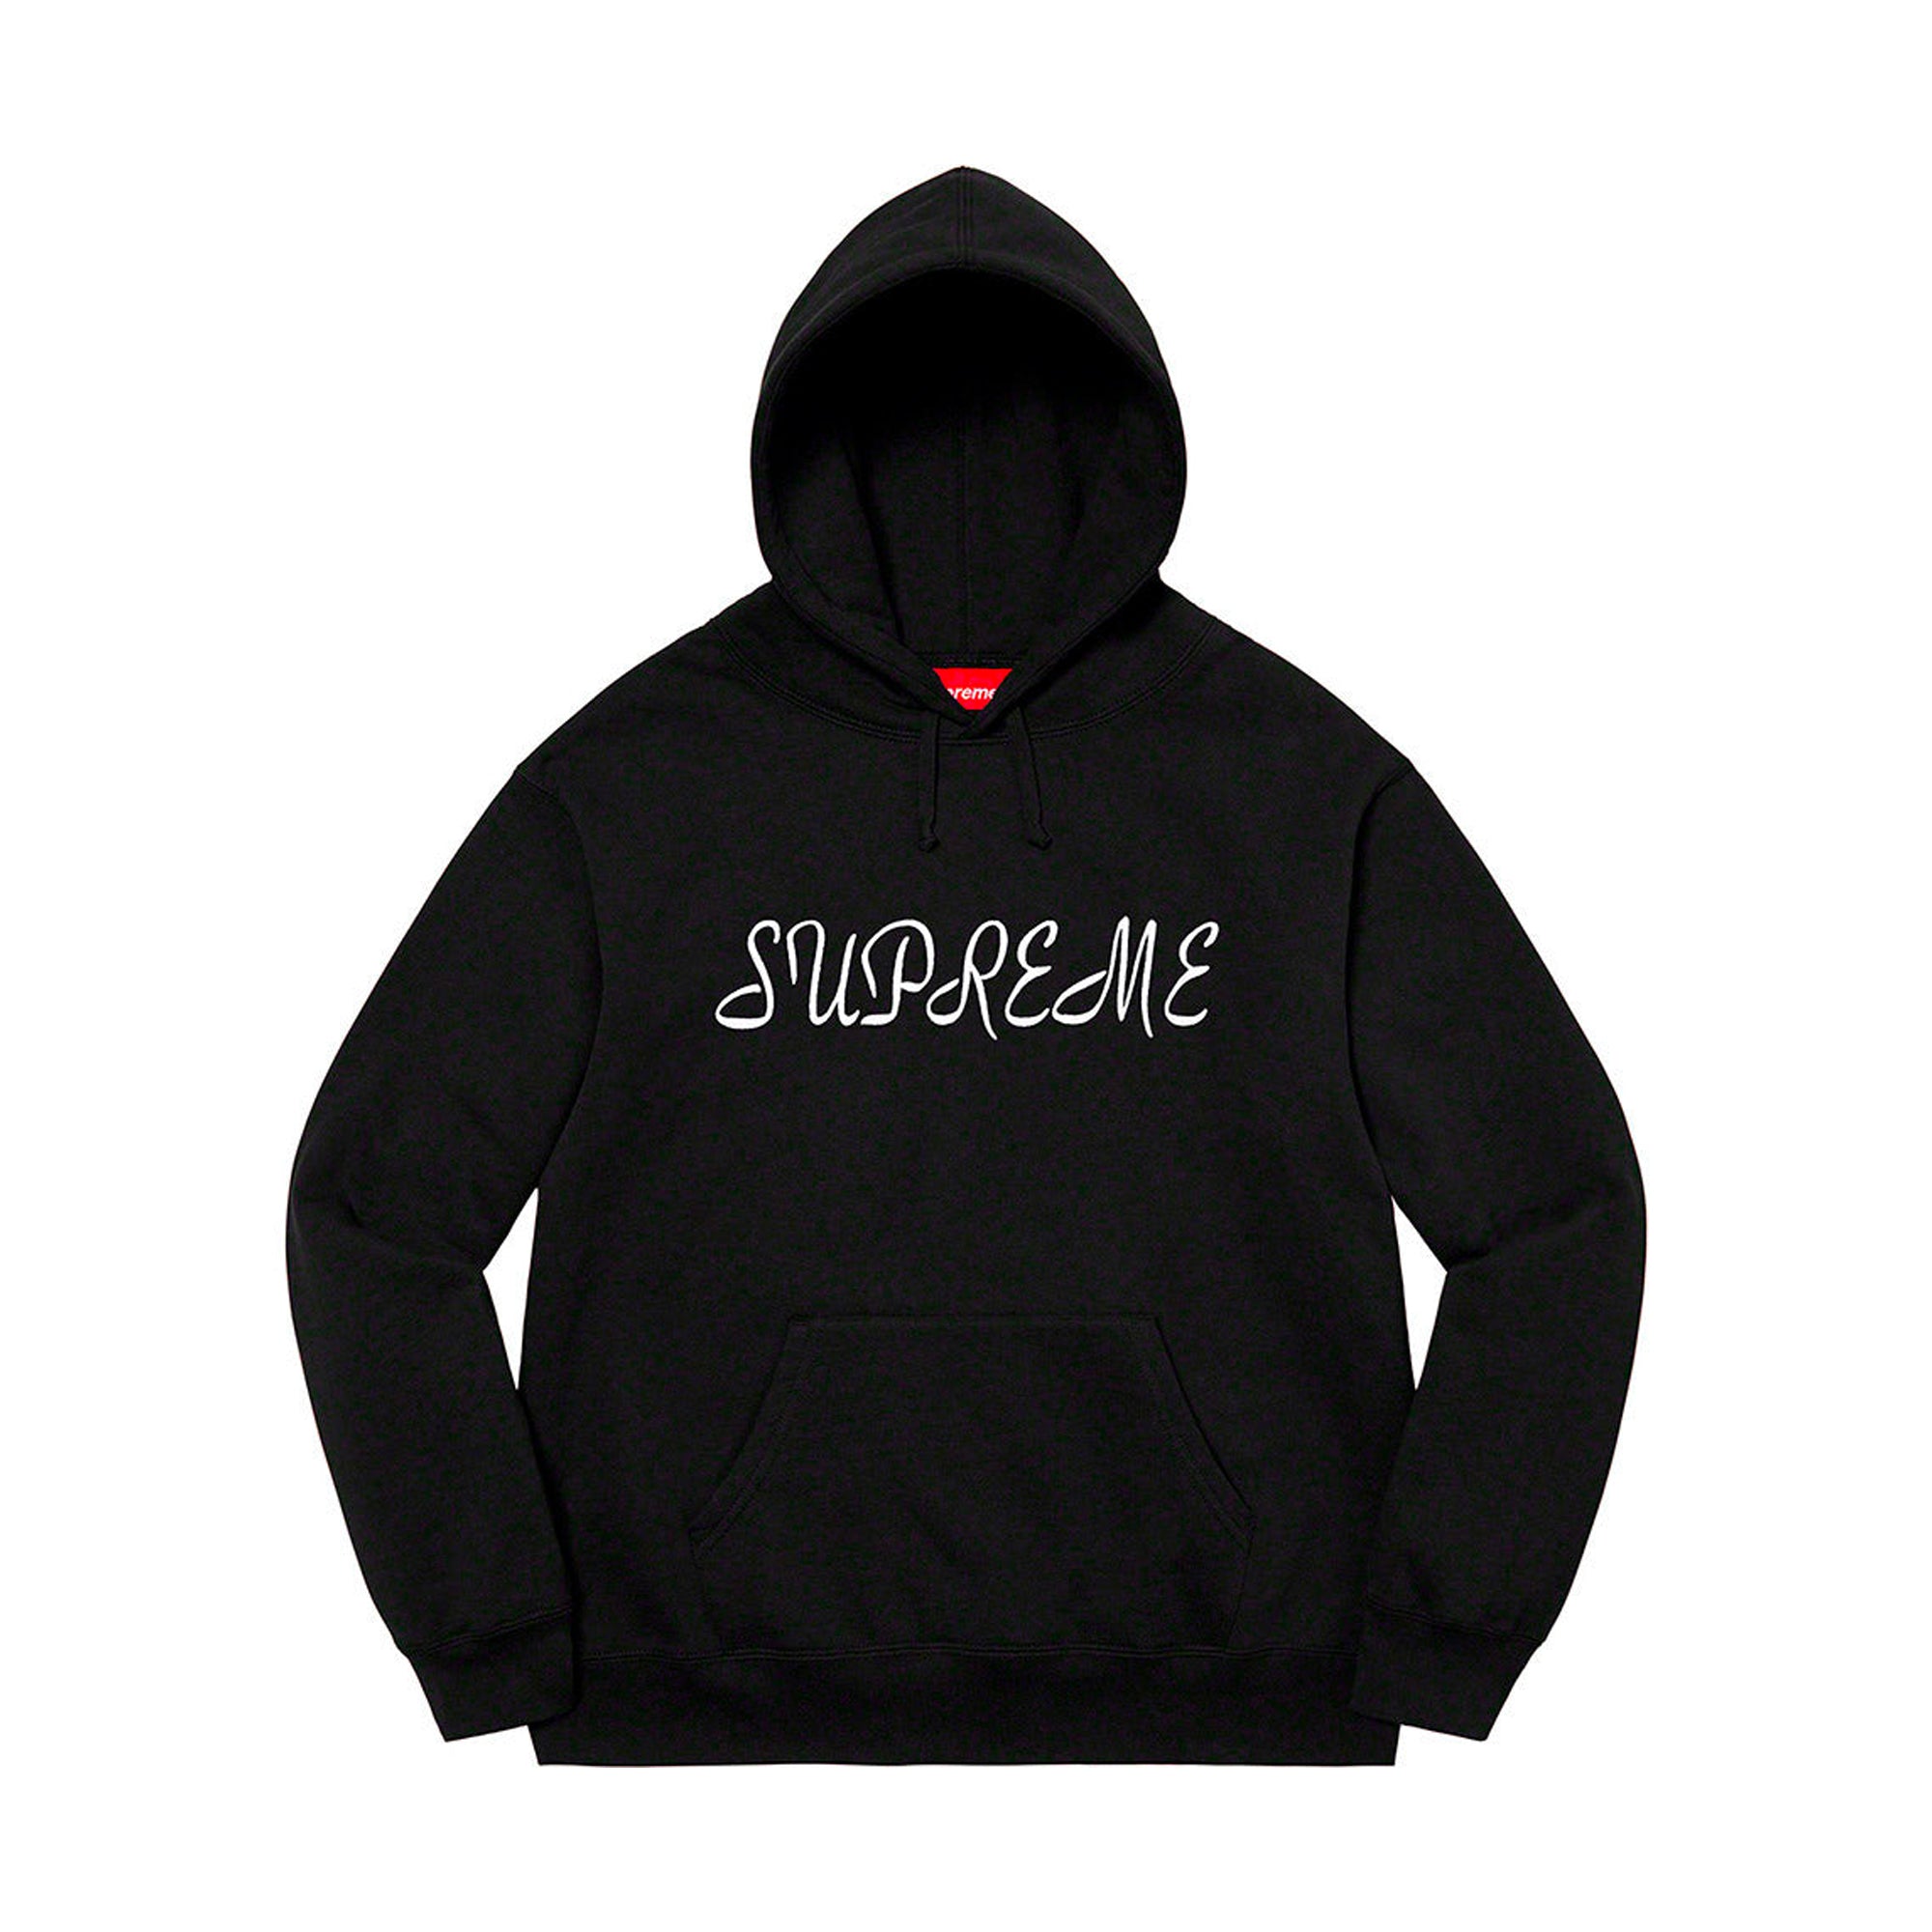 Supreme Script Hooded Sweatshirt Black